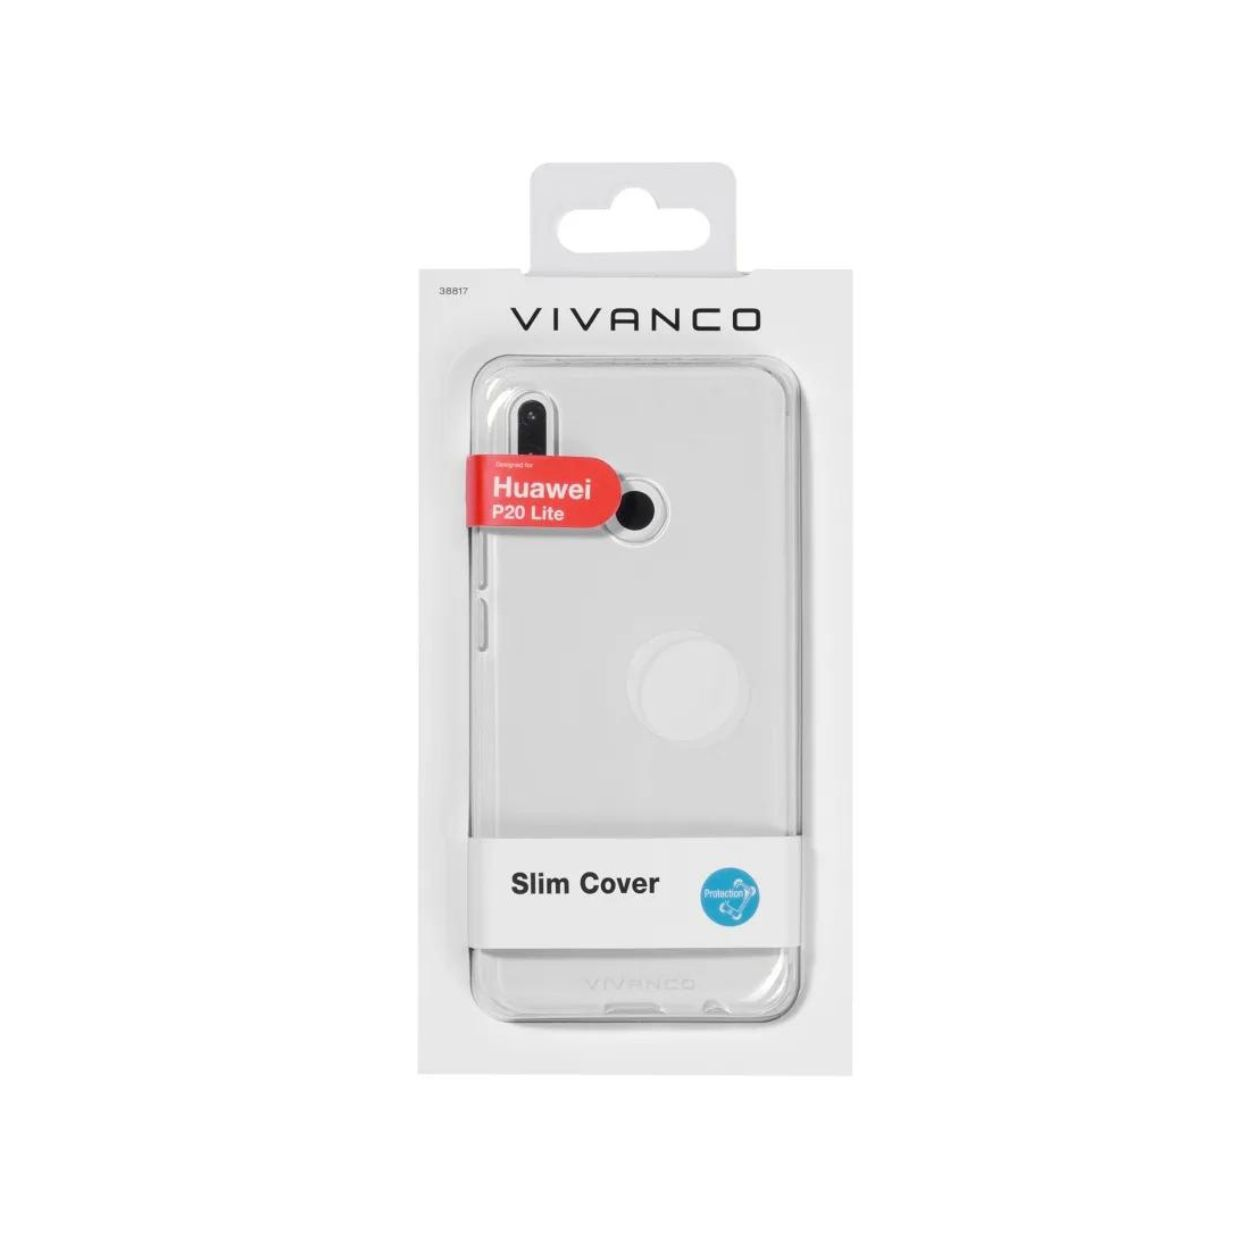 VIVANCO 38817, Lite, P20 Backcover, Transparent Huawei